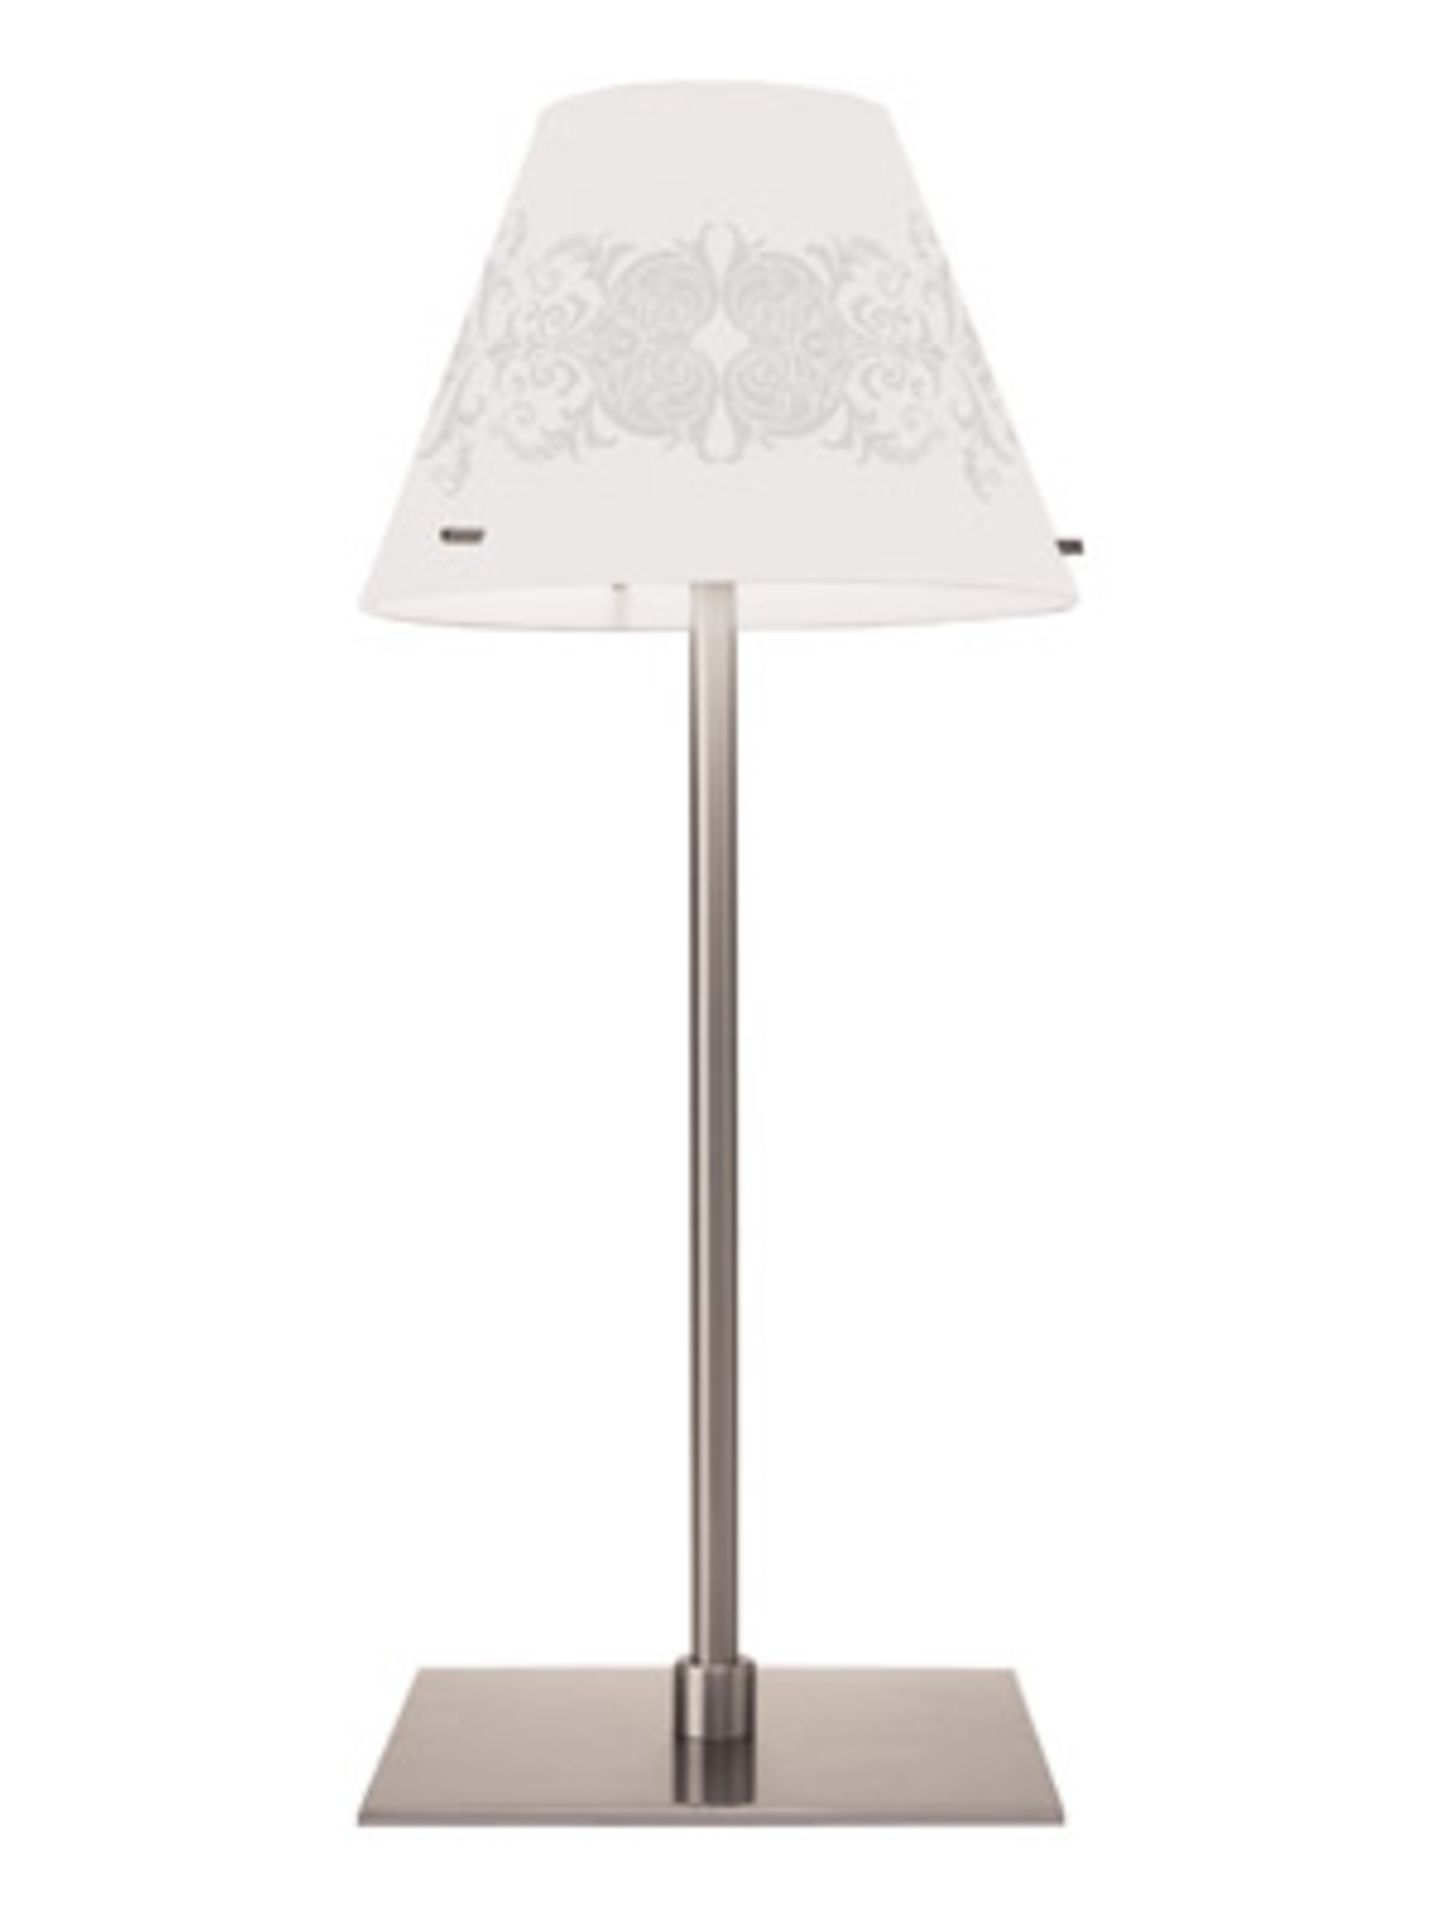 Weiße Stehlampe mit grauem Print für ca. 98 Euro von ESPRIT www.esprit.de